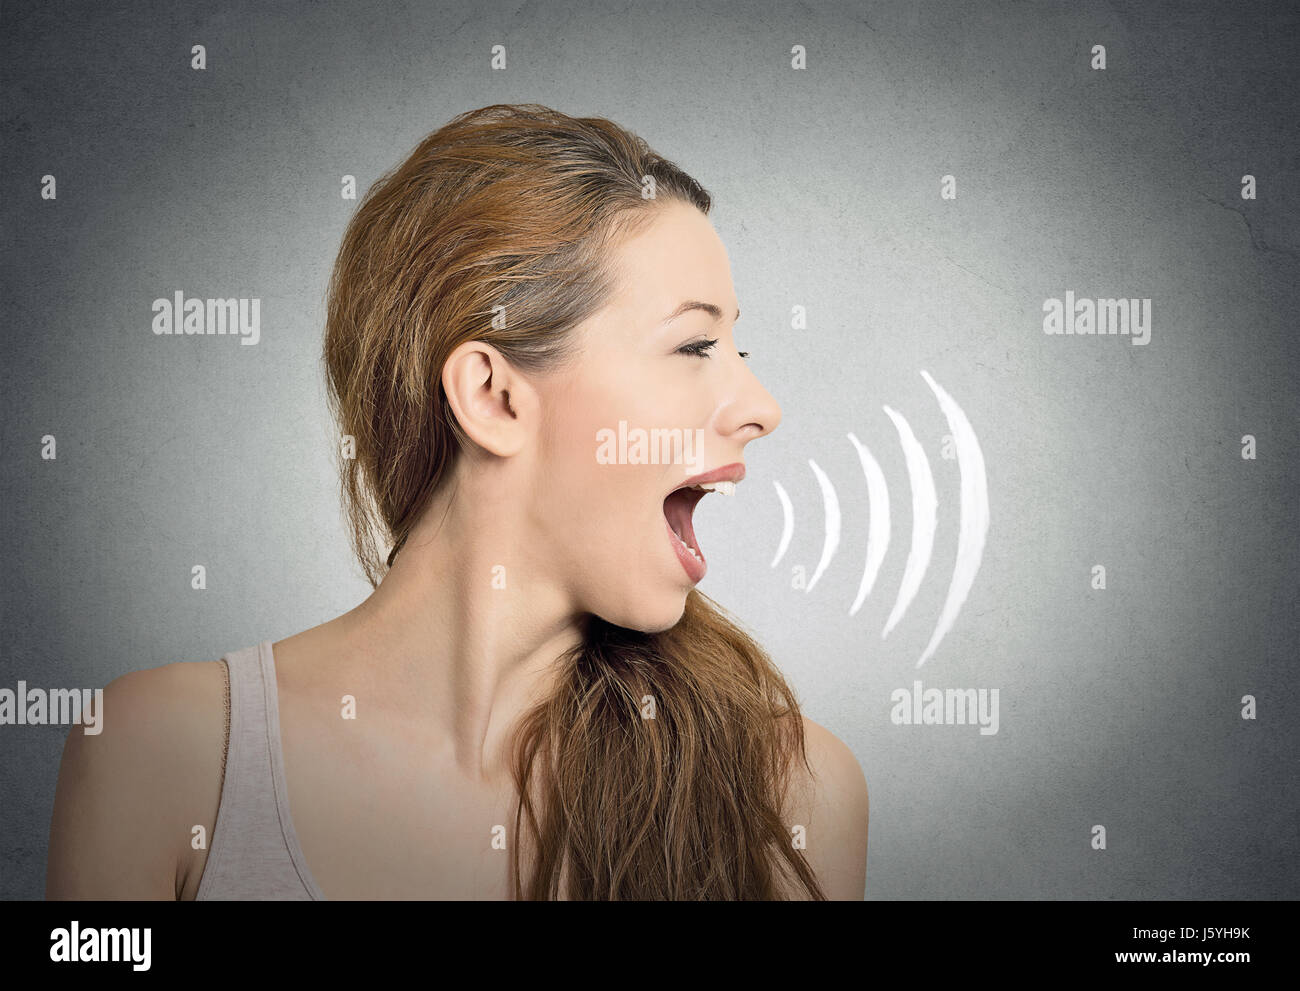 Portrait jeune femme parlant avec des ondes sonores qui sortent de sa bouche fond mur gris isolé. Expressions à visage humain Banque D'Images